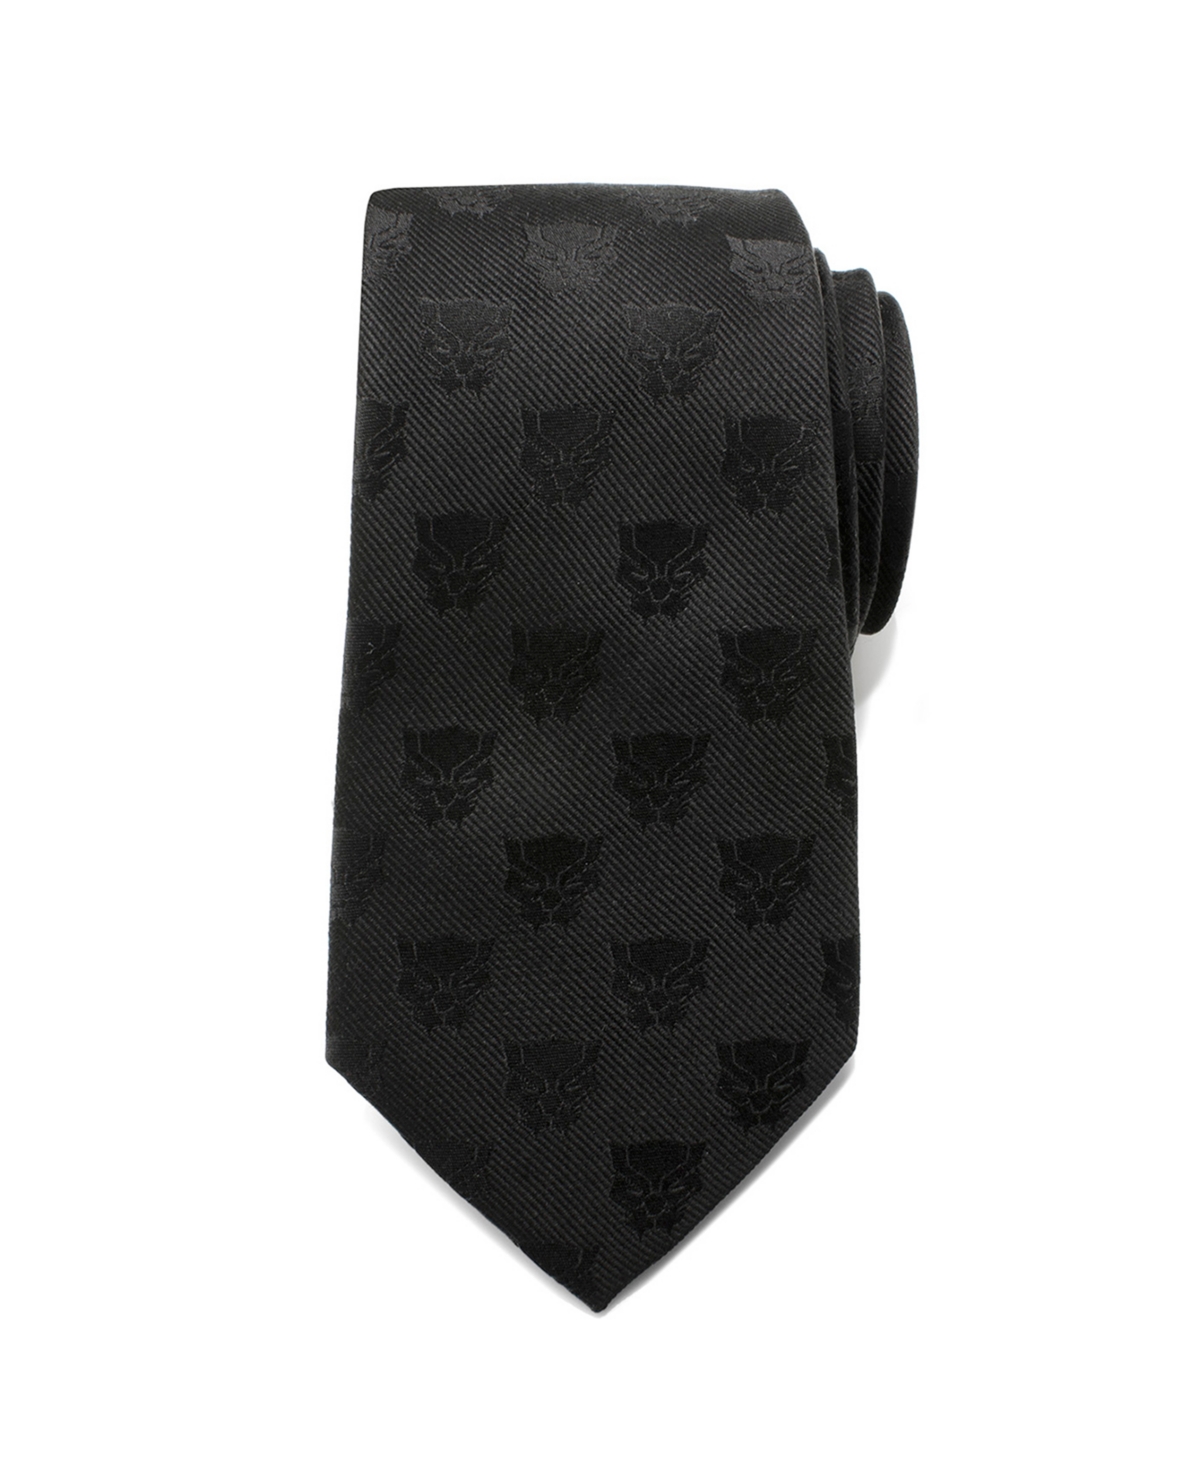 Panther Men's Tie - Black